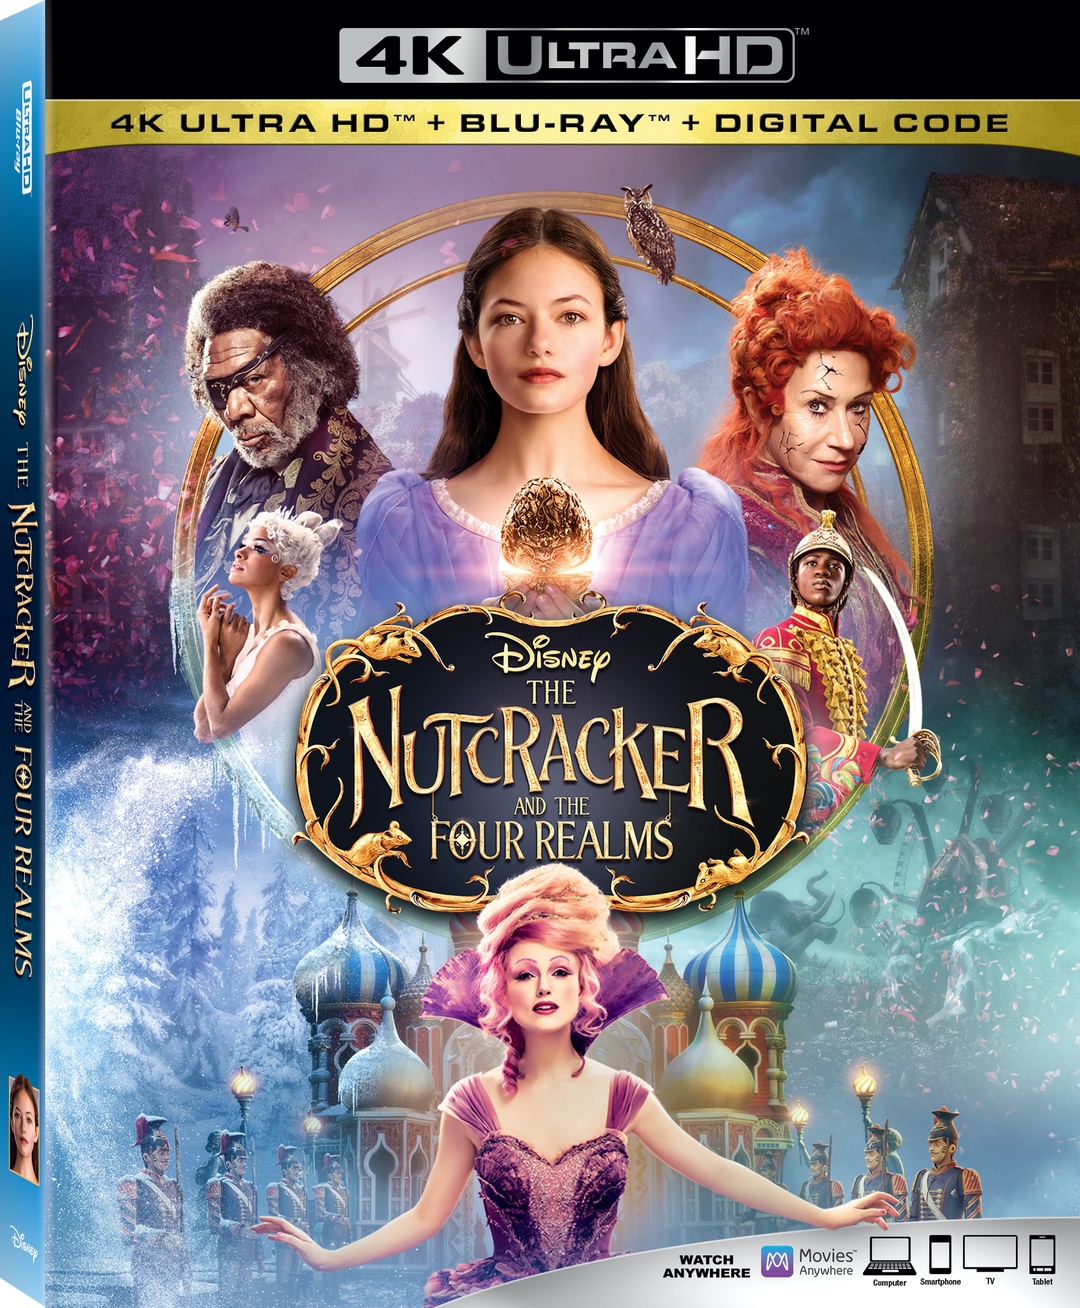 The Nutcracker and Four Realms #DisneysNutcracker #Nutcracker #movie #giveaway #ad